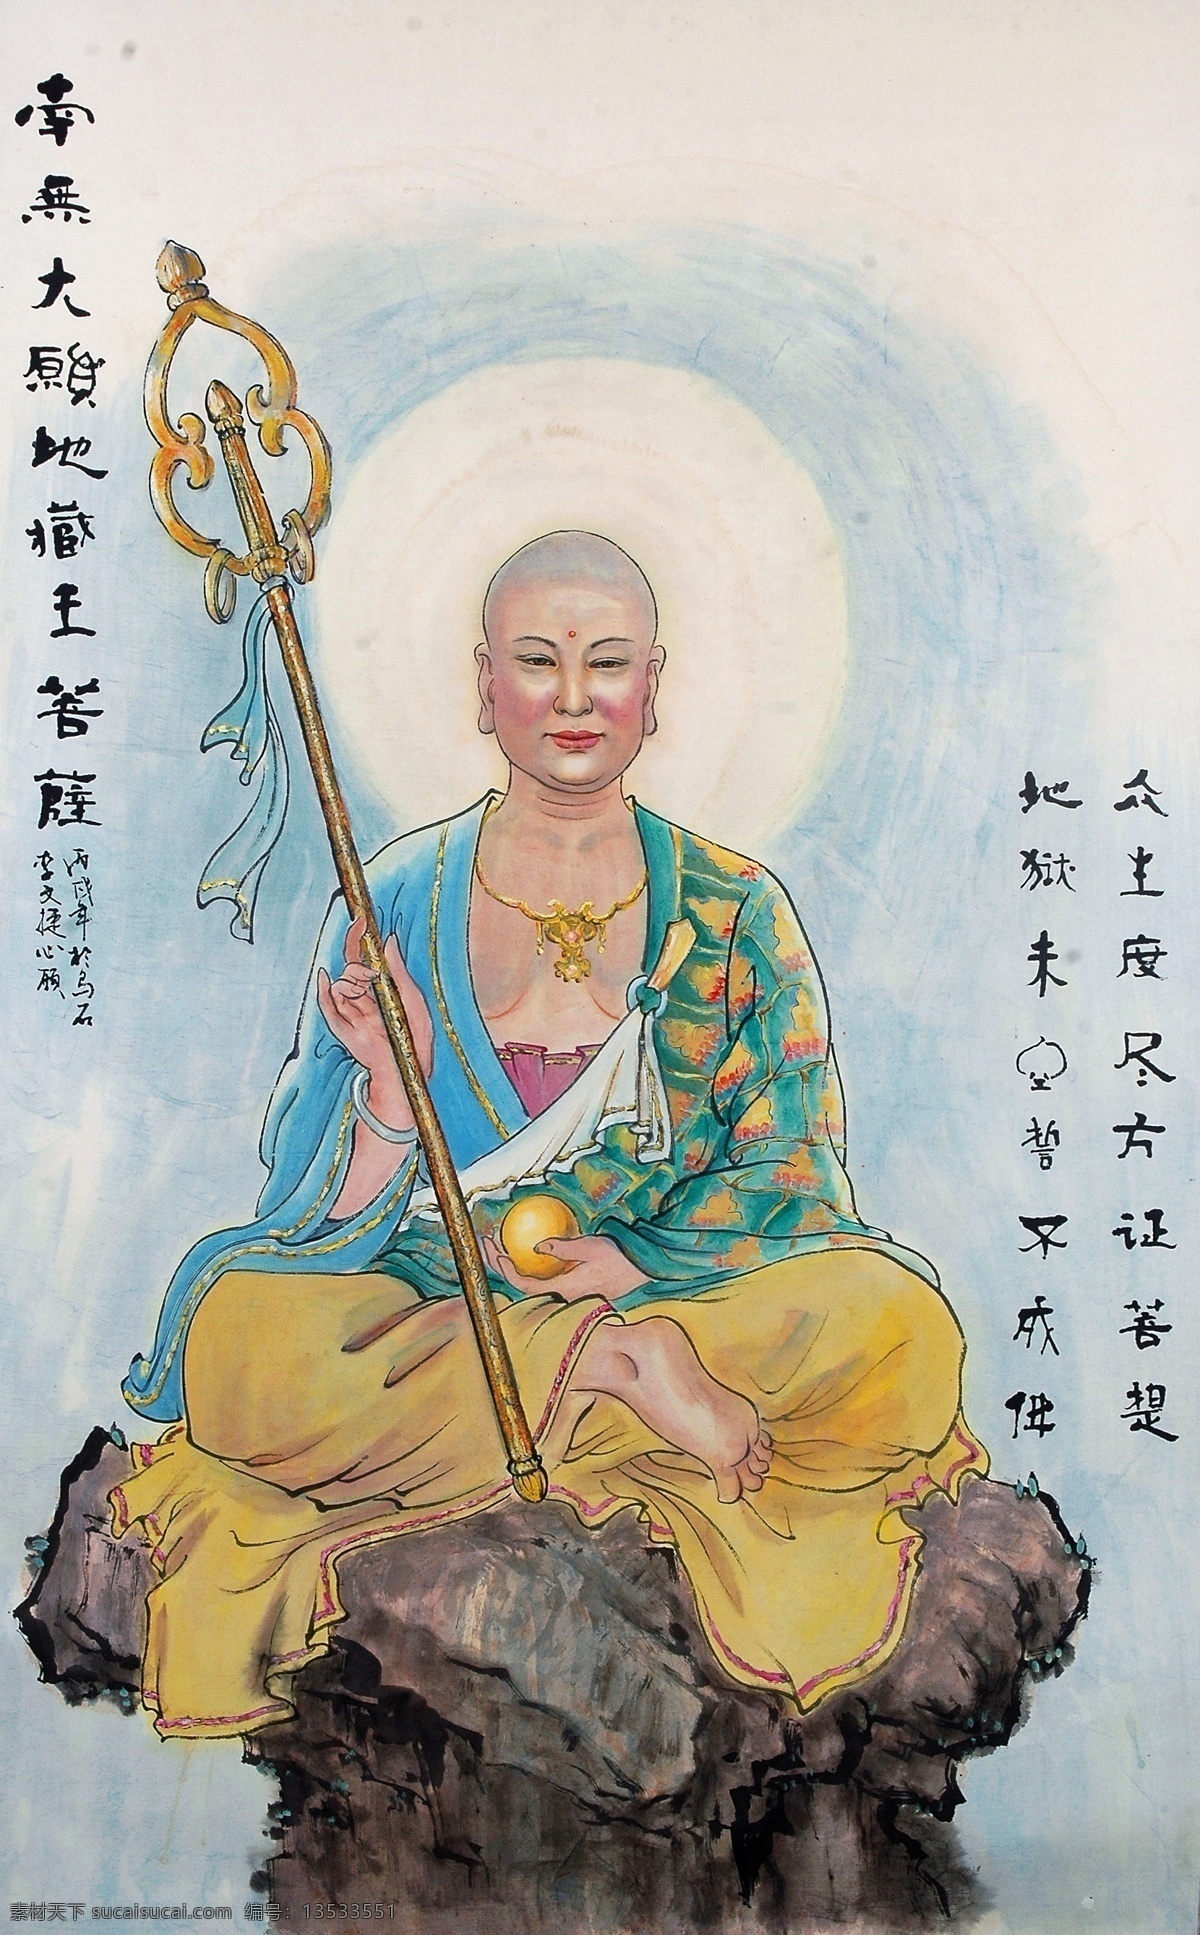 南 无地 藏王 菩萨 国画 国画欣赏 绘画书法 人物 文化艺术 写意 宗教信仰 佛教人物